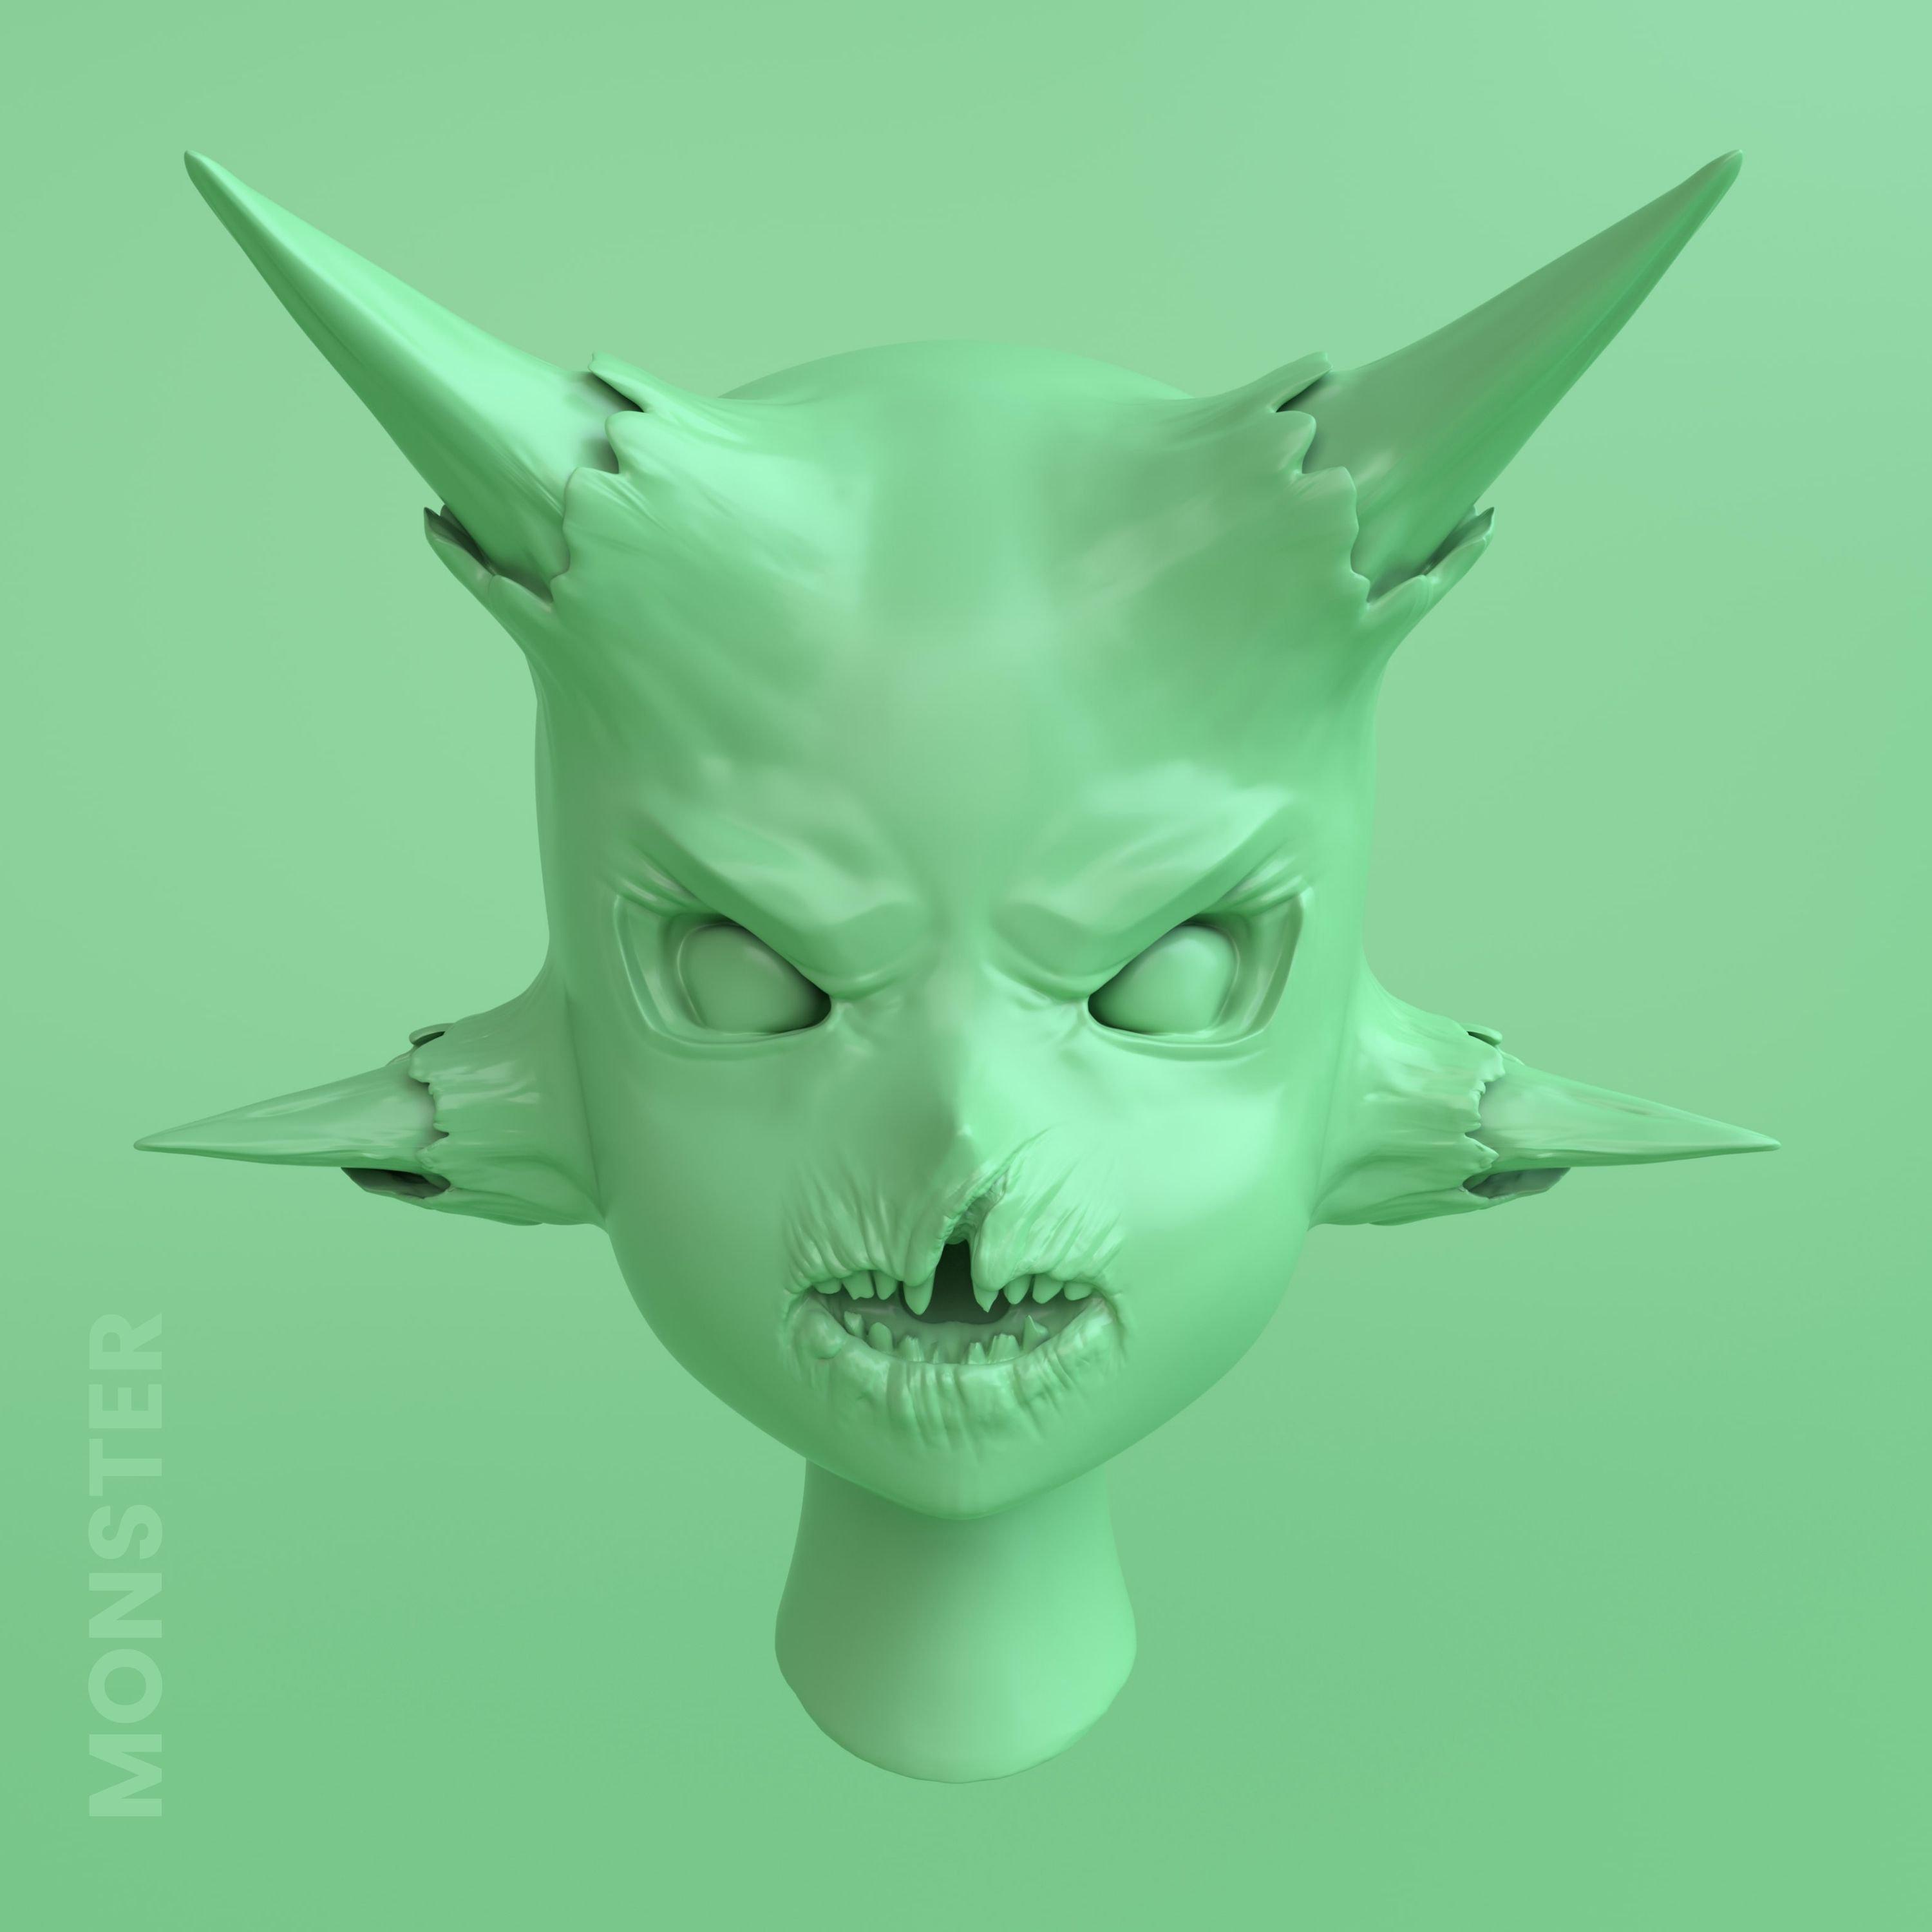 MJSTK - Monster